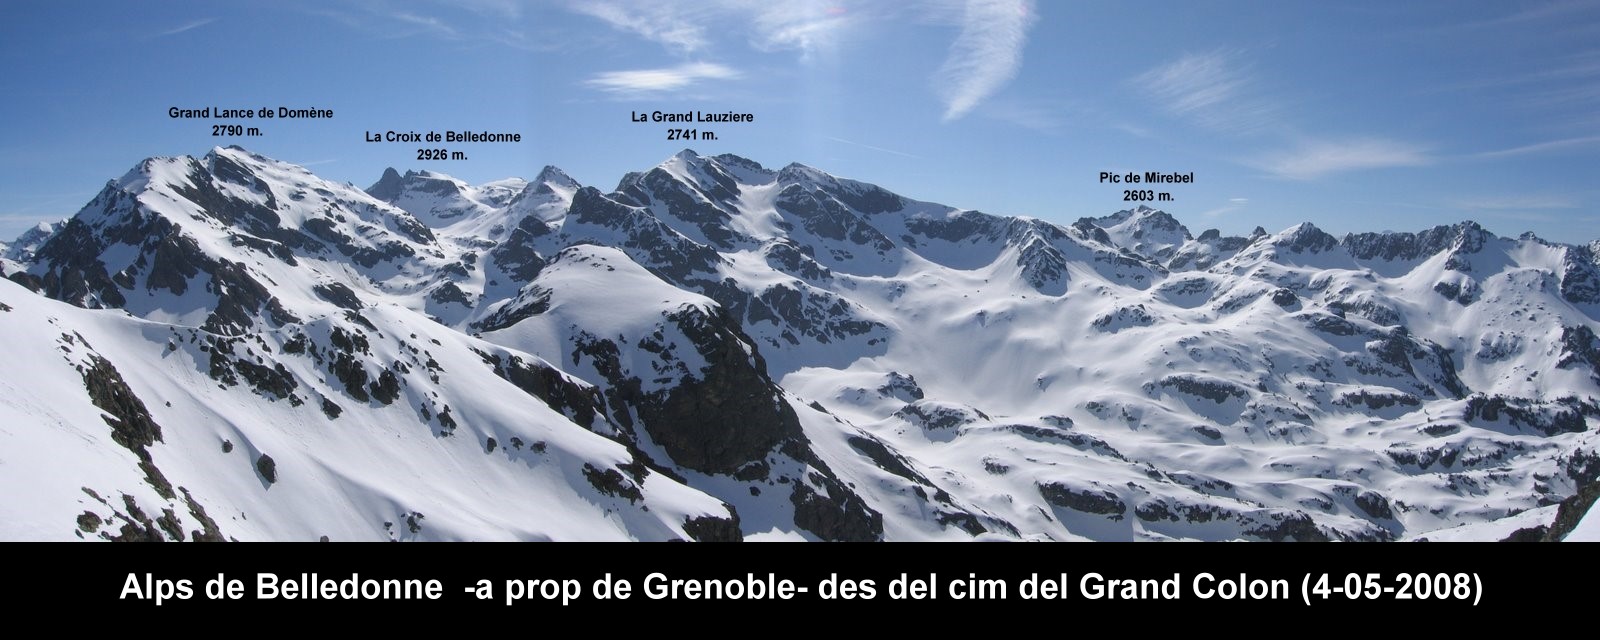 Alps de Belledonne (04-05-2008)